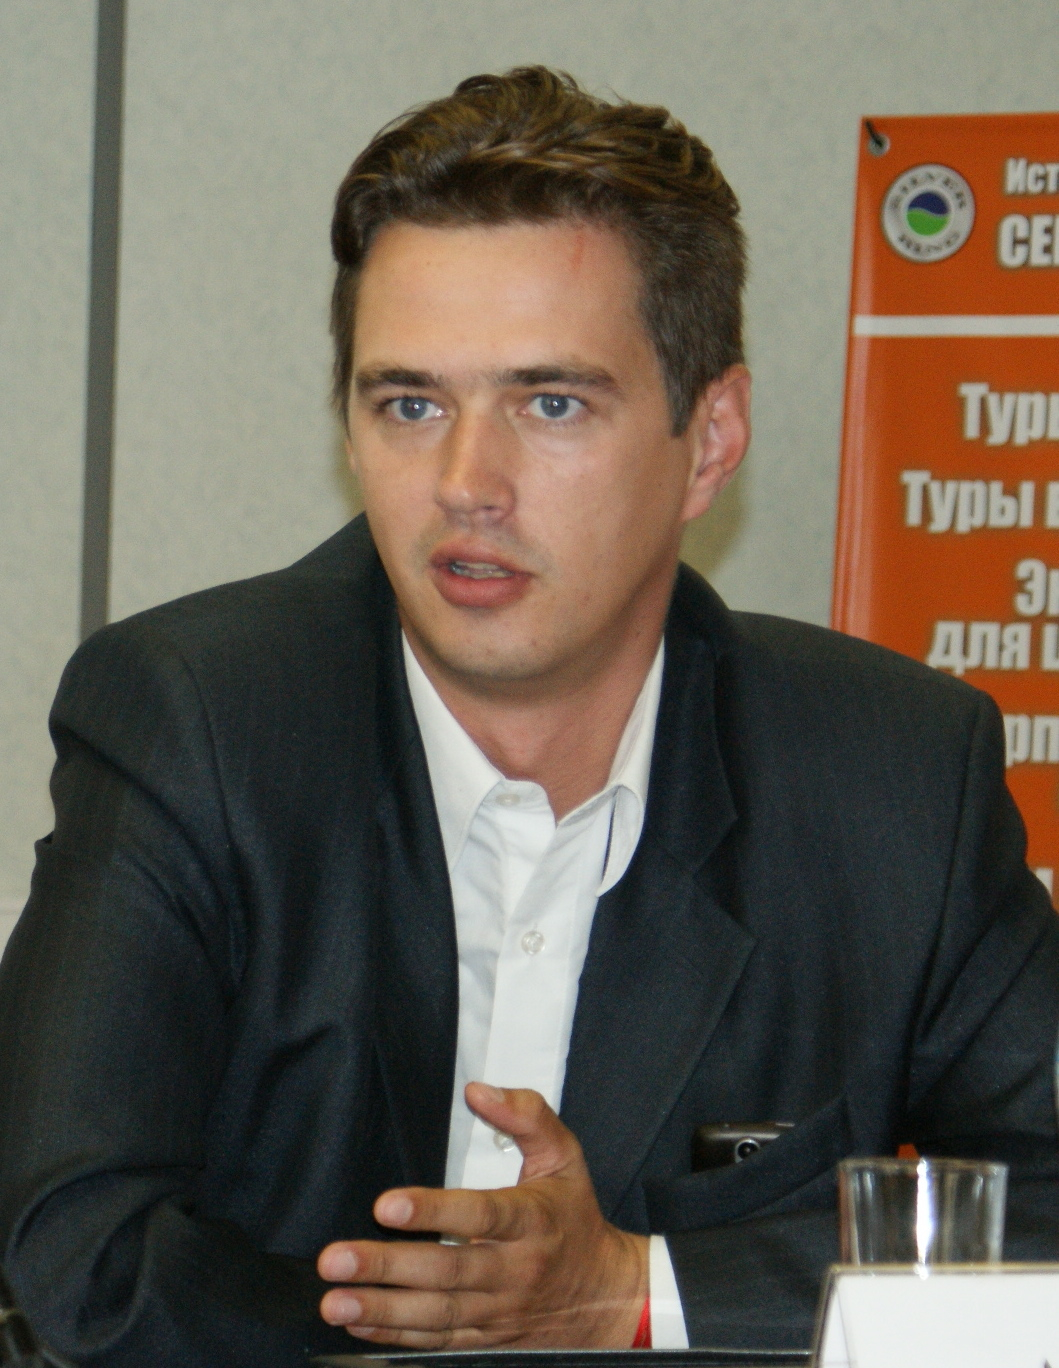 Холодов Александр Львович, - член Координационного совета Межрегиональной общественной организации автомобилистов 